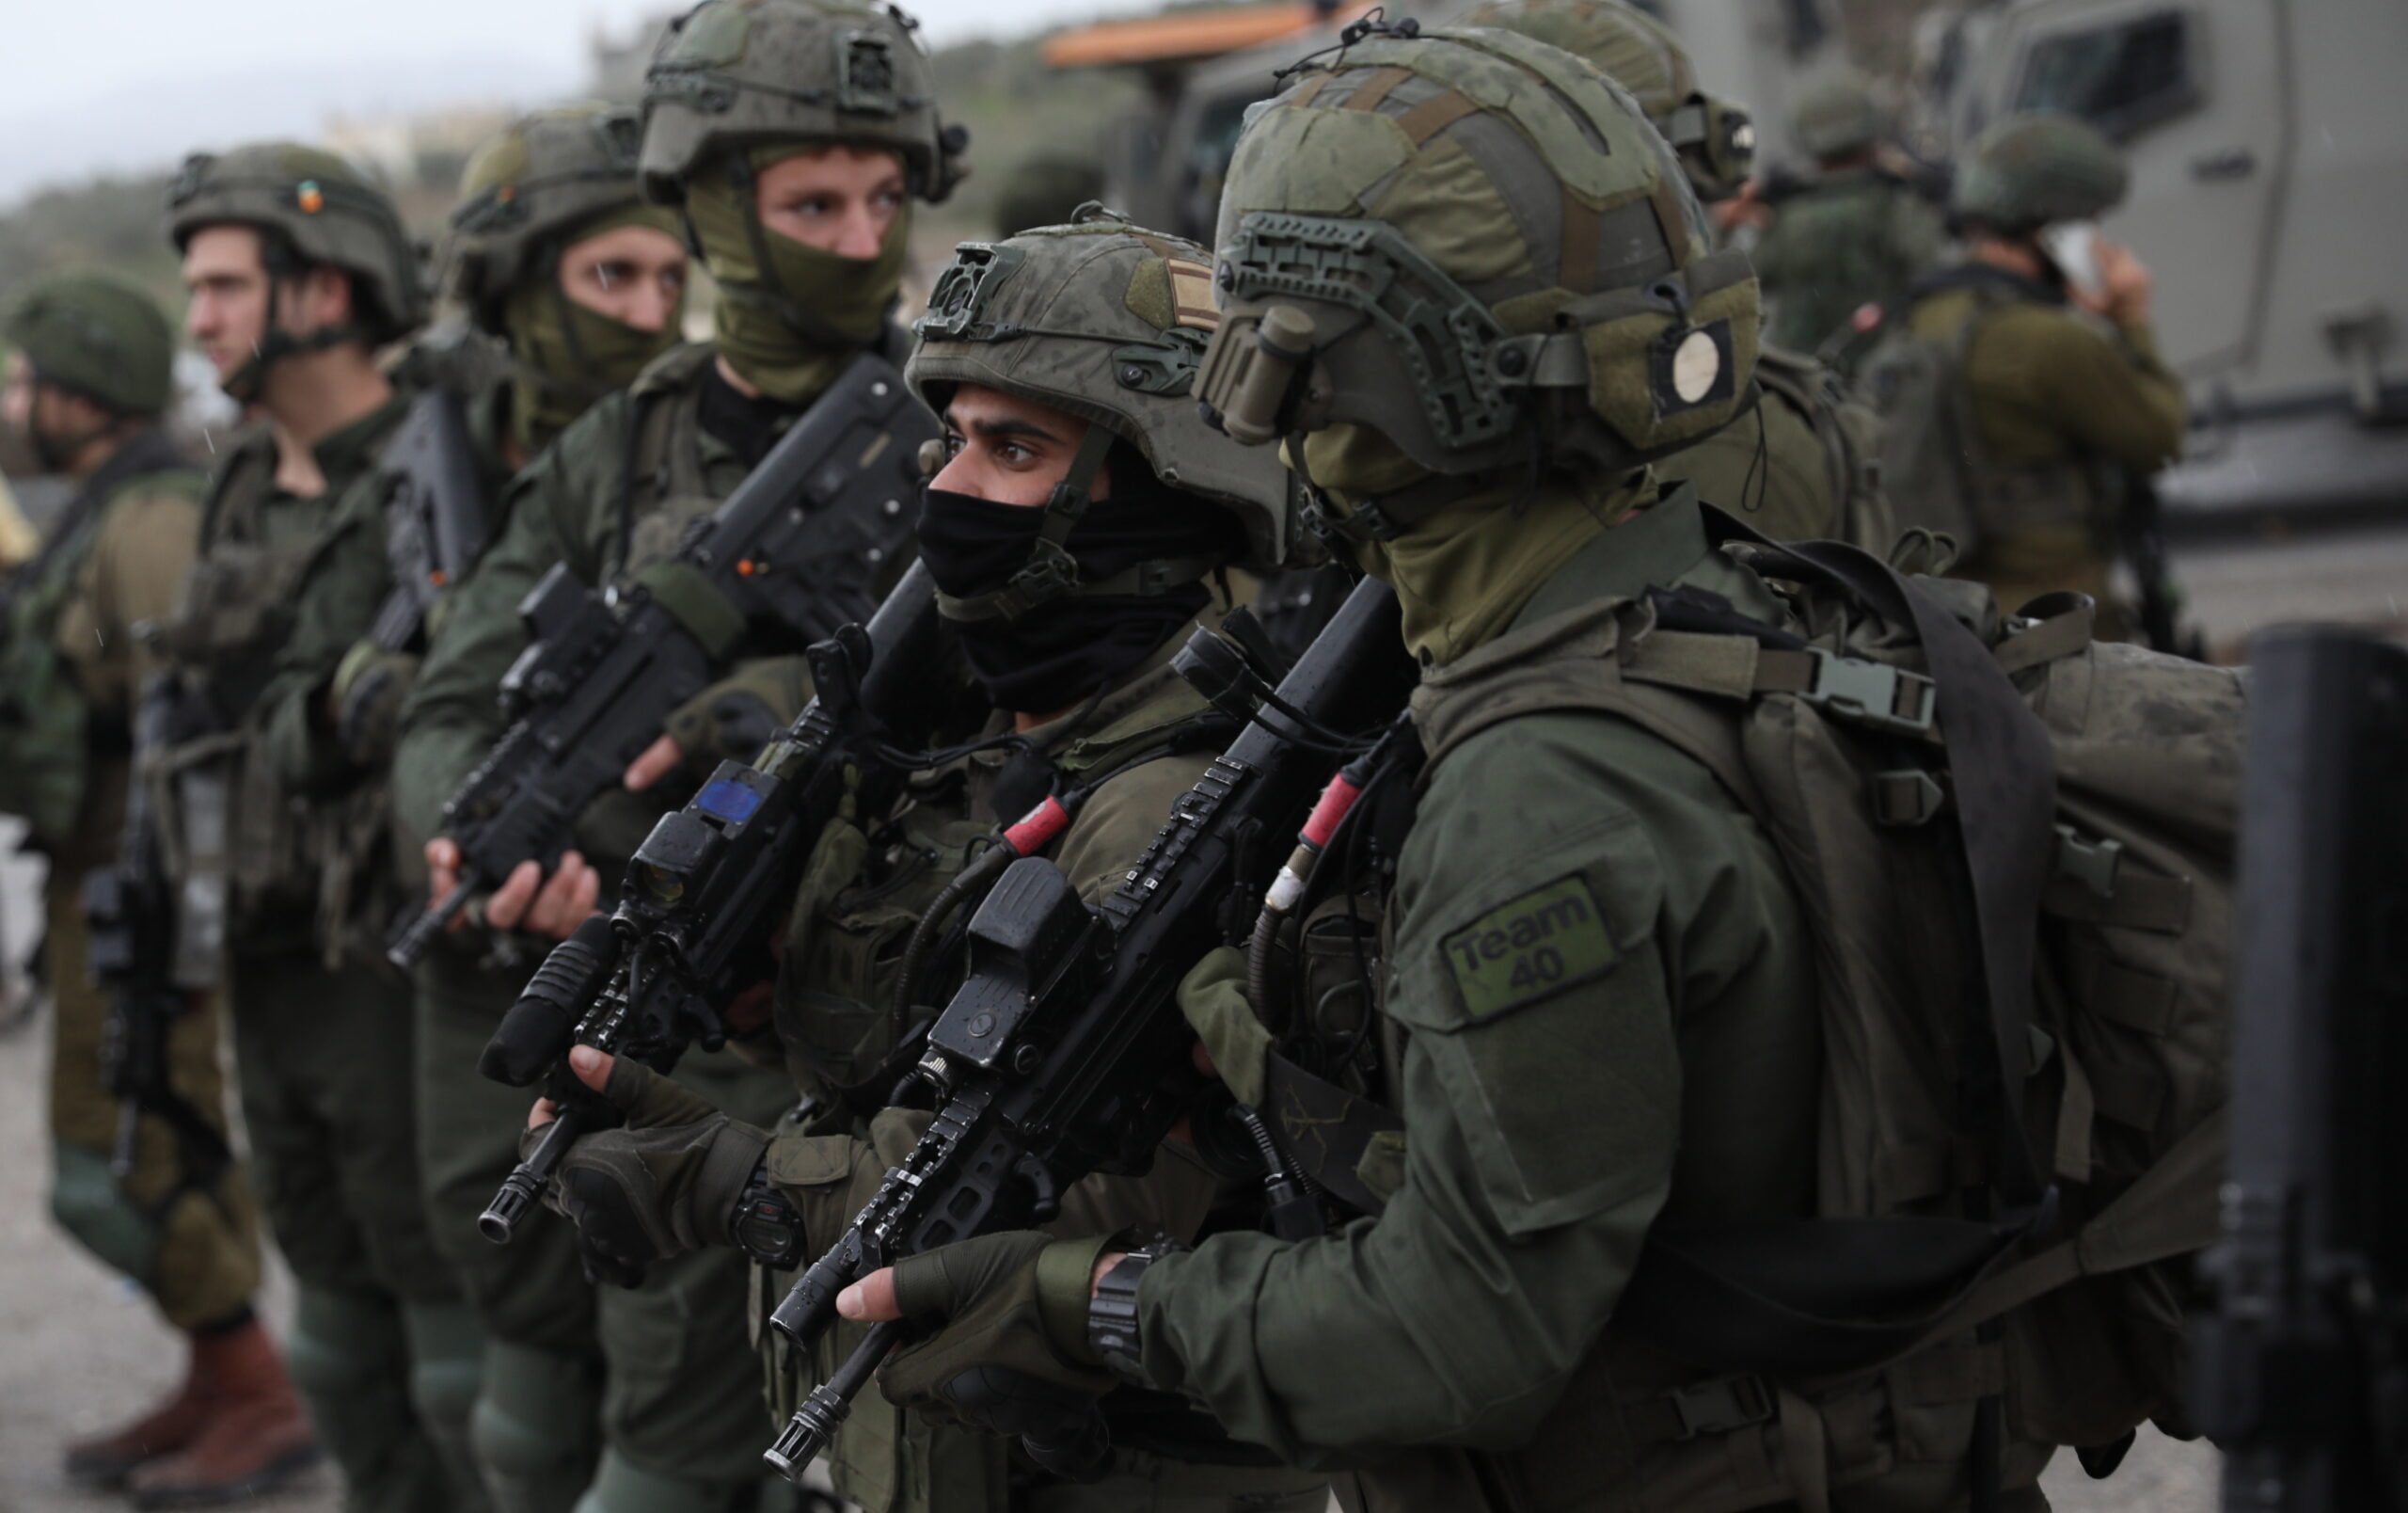 Az izraeli biztonsági erők elfogták a Jehuda Dimentmant meggyilkoló terroristákat